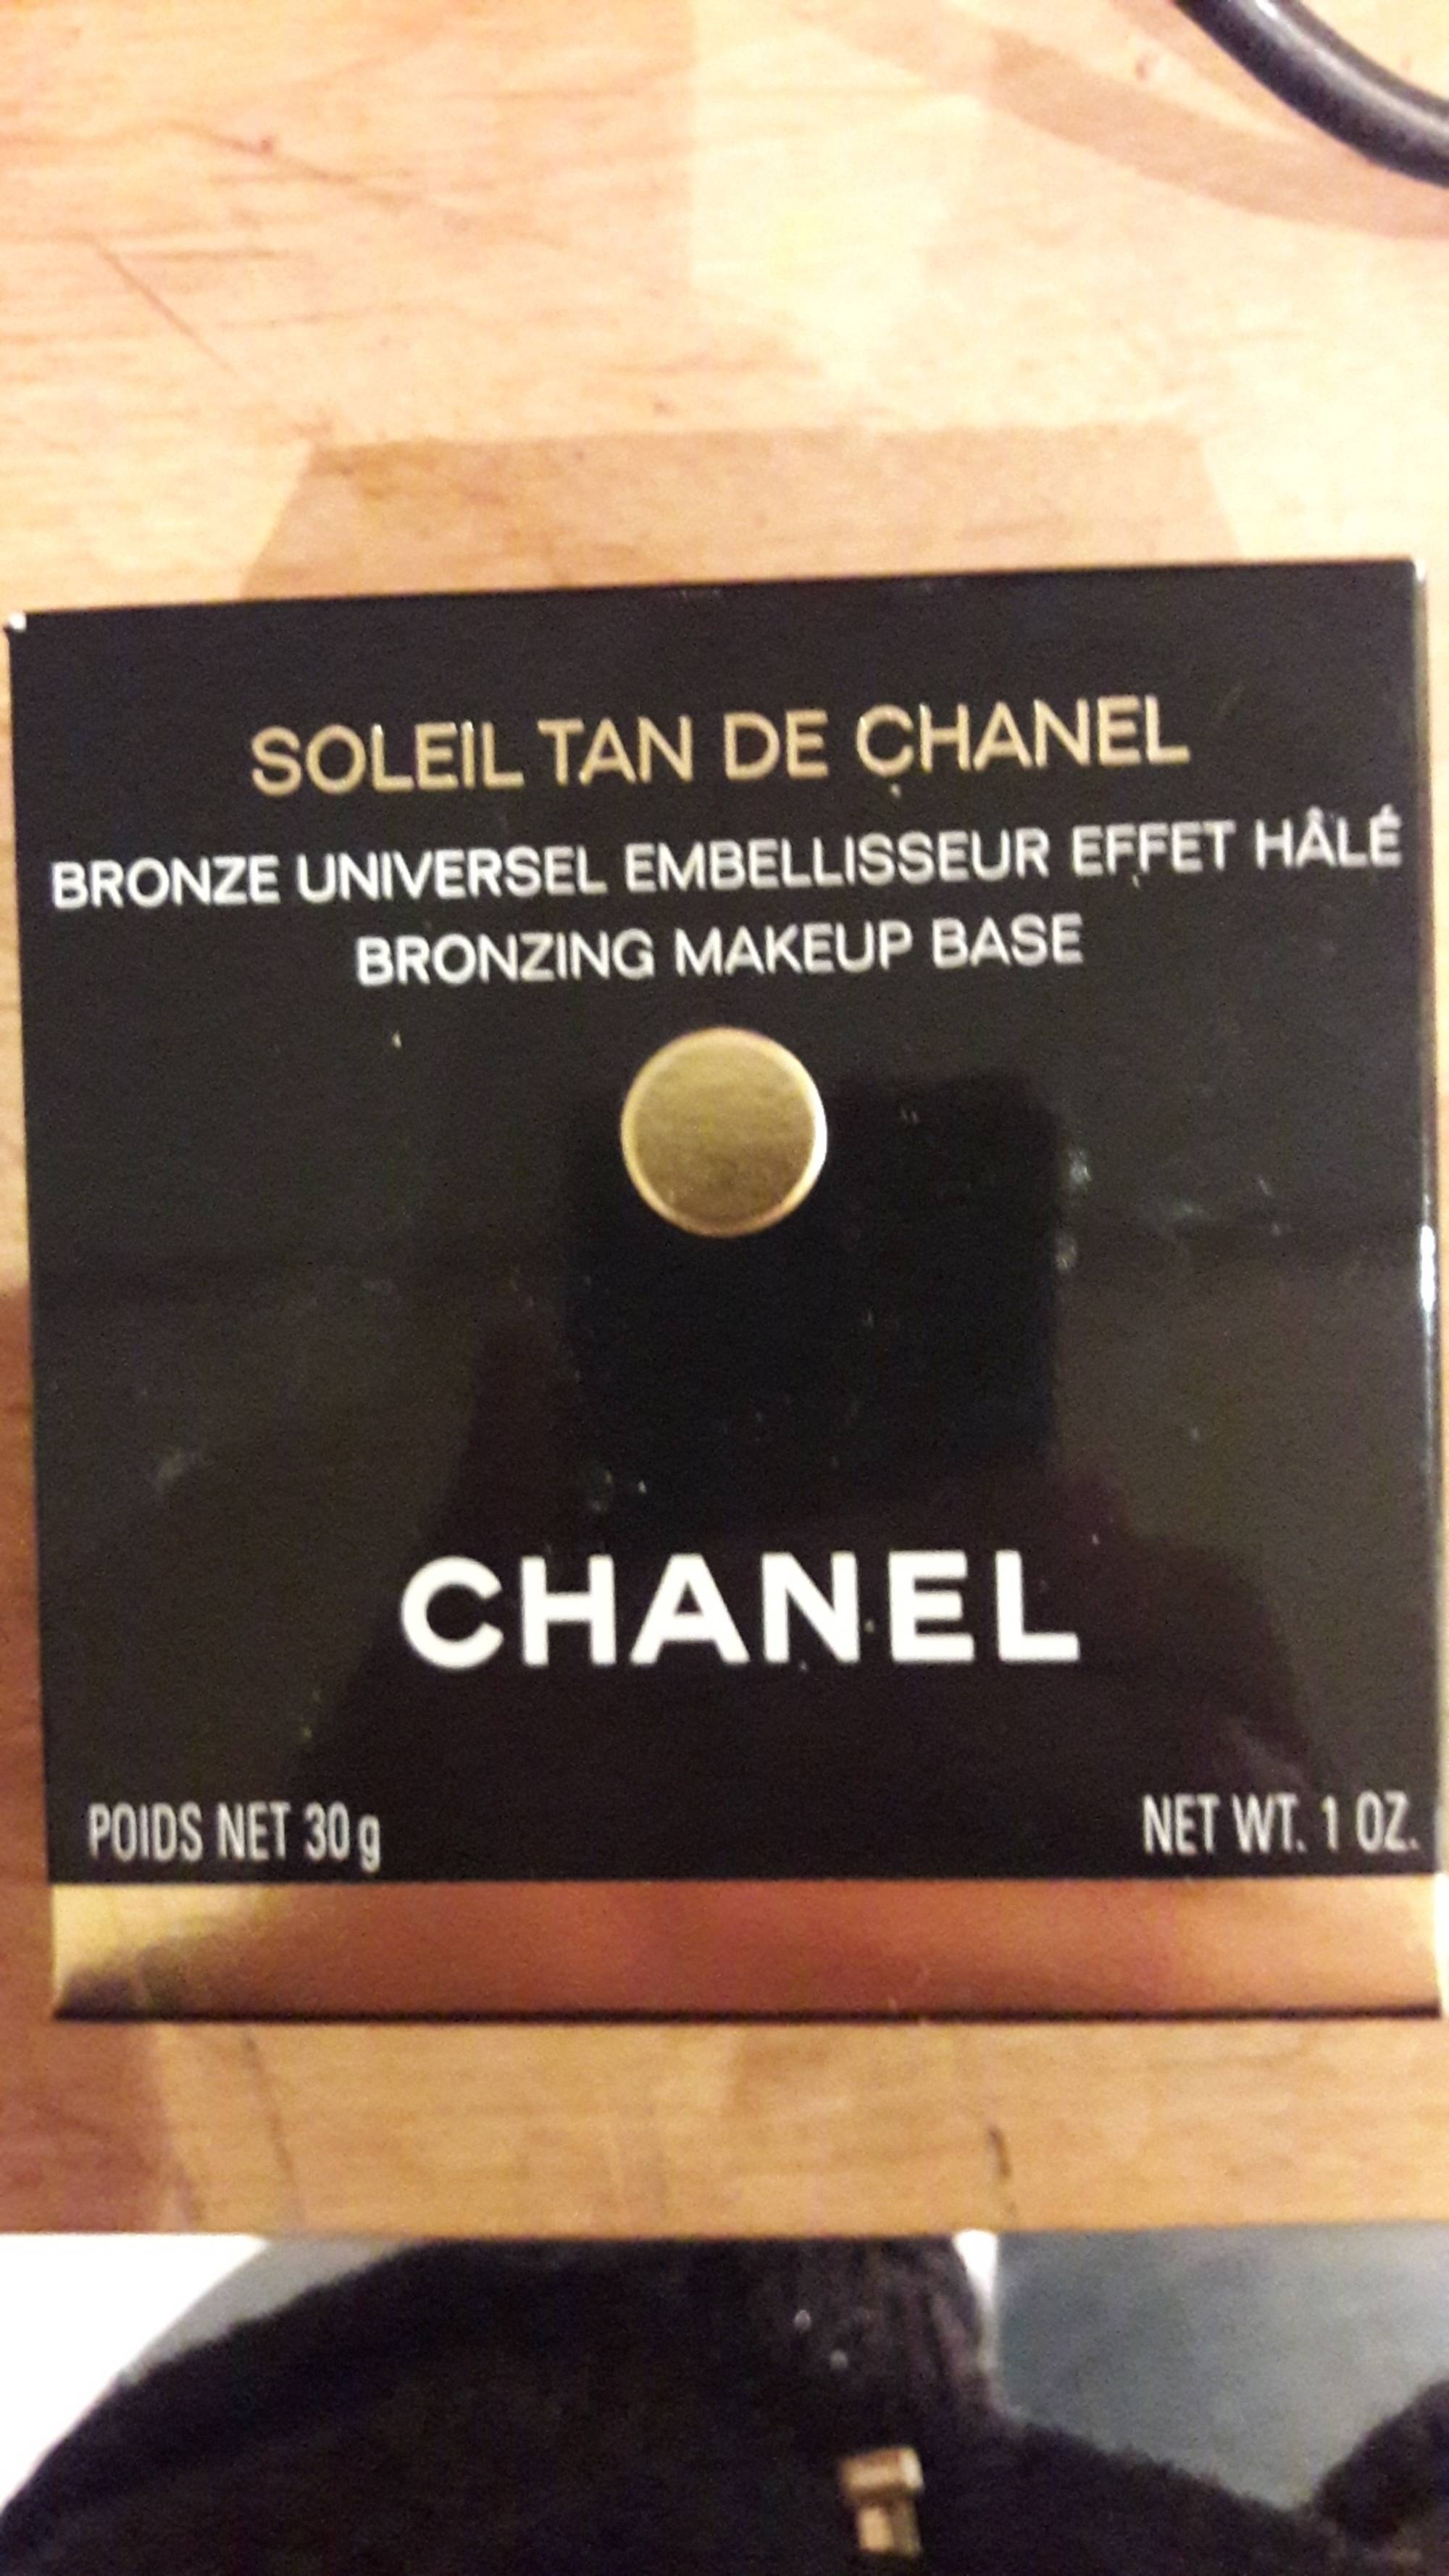 Composition CHANEL Soleil tan de chanel - Bronze universel